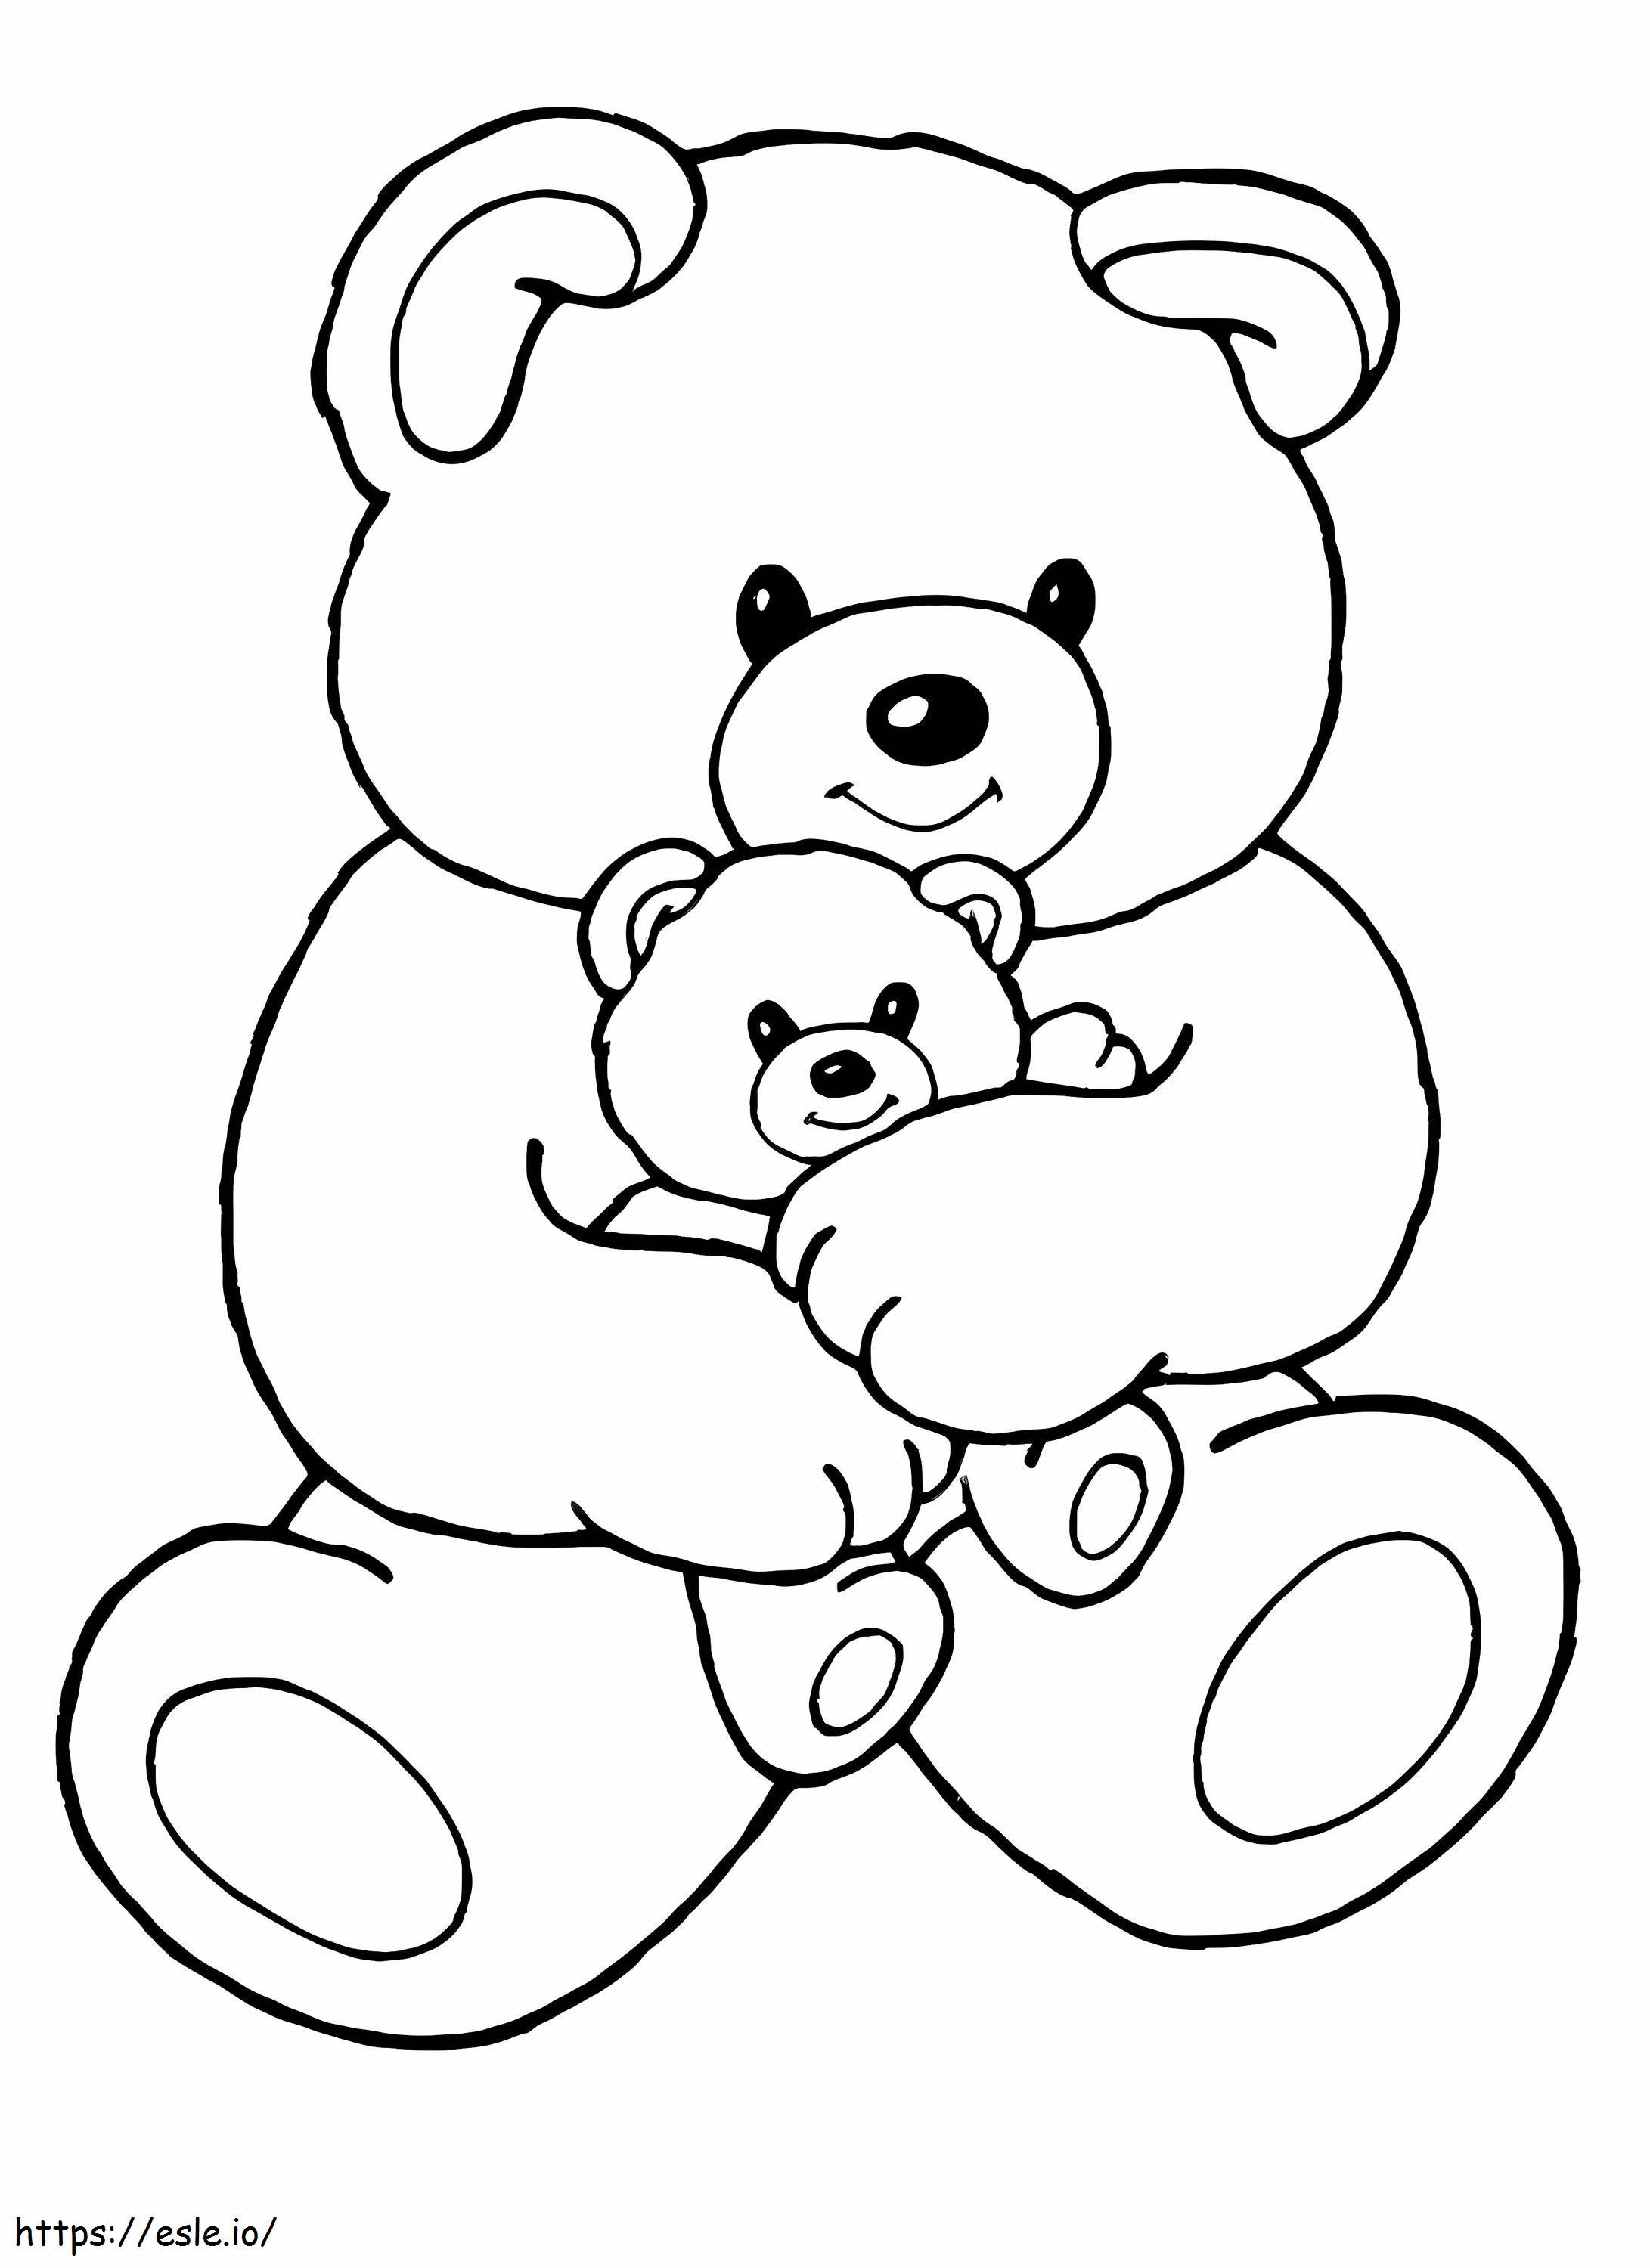 Großer Teddybär umarmt einen kleinen Teddybären ausmalbilder